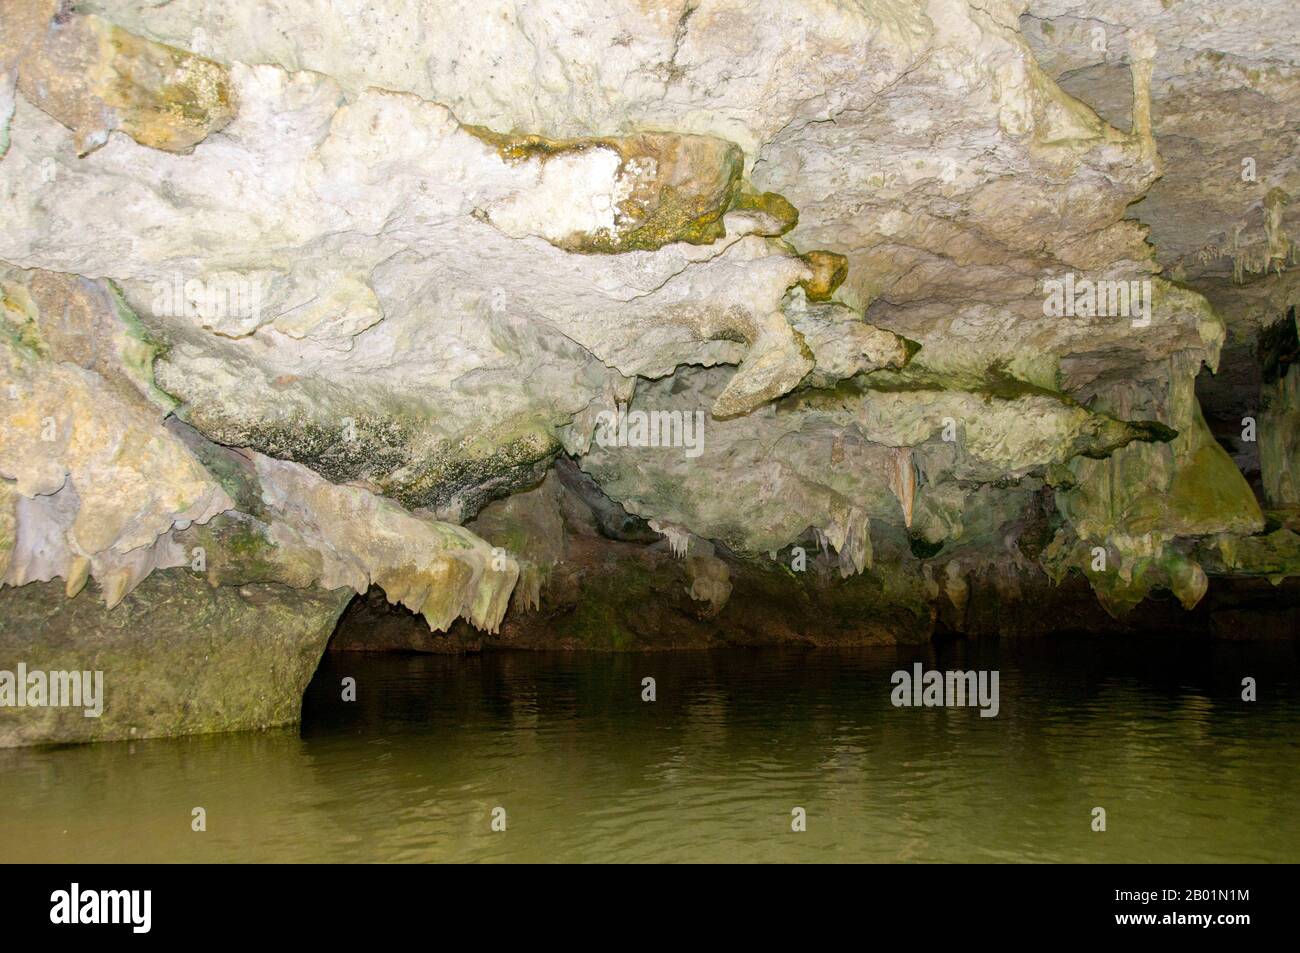 Thailandia: Grotta Tham Lot, Than Bokkharani National Park, provincia di Krabi. Il Parco Nazionale di Than Bokkharani si trova nella provincia di Krabi a circa 45 chilometri (28 miglia) a nord-ovest della città di Krabi. Il parco copre un'area di 121 chilometri quadrati (47 miglia quadrate) ed è caratterizzato da una serie di affioramenti calcarei, foreste pluviali sempreverdi, foreste di mangrovie, paludi torbiere e molte isole. Ci sono anche numerose grotte e complessi rupestri con alcune spettacolari stalagmiti e stalattiti. Il Bokkharani è incentrato su due famose grotte, Tham Lot e Tham Phi Hua. Foto Stock